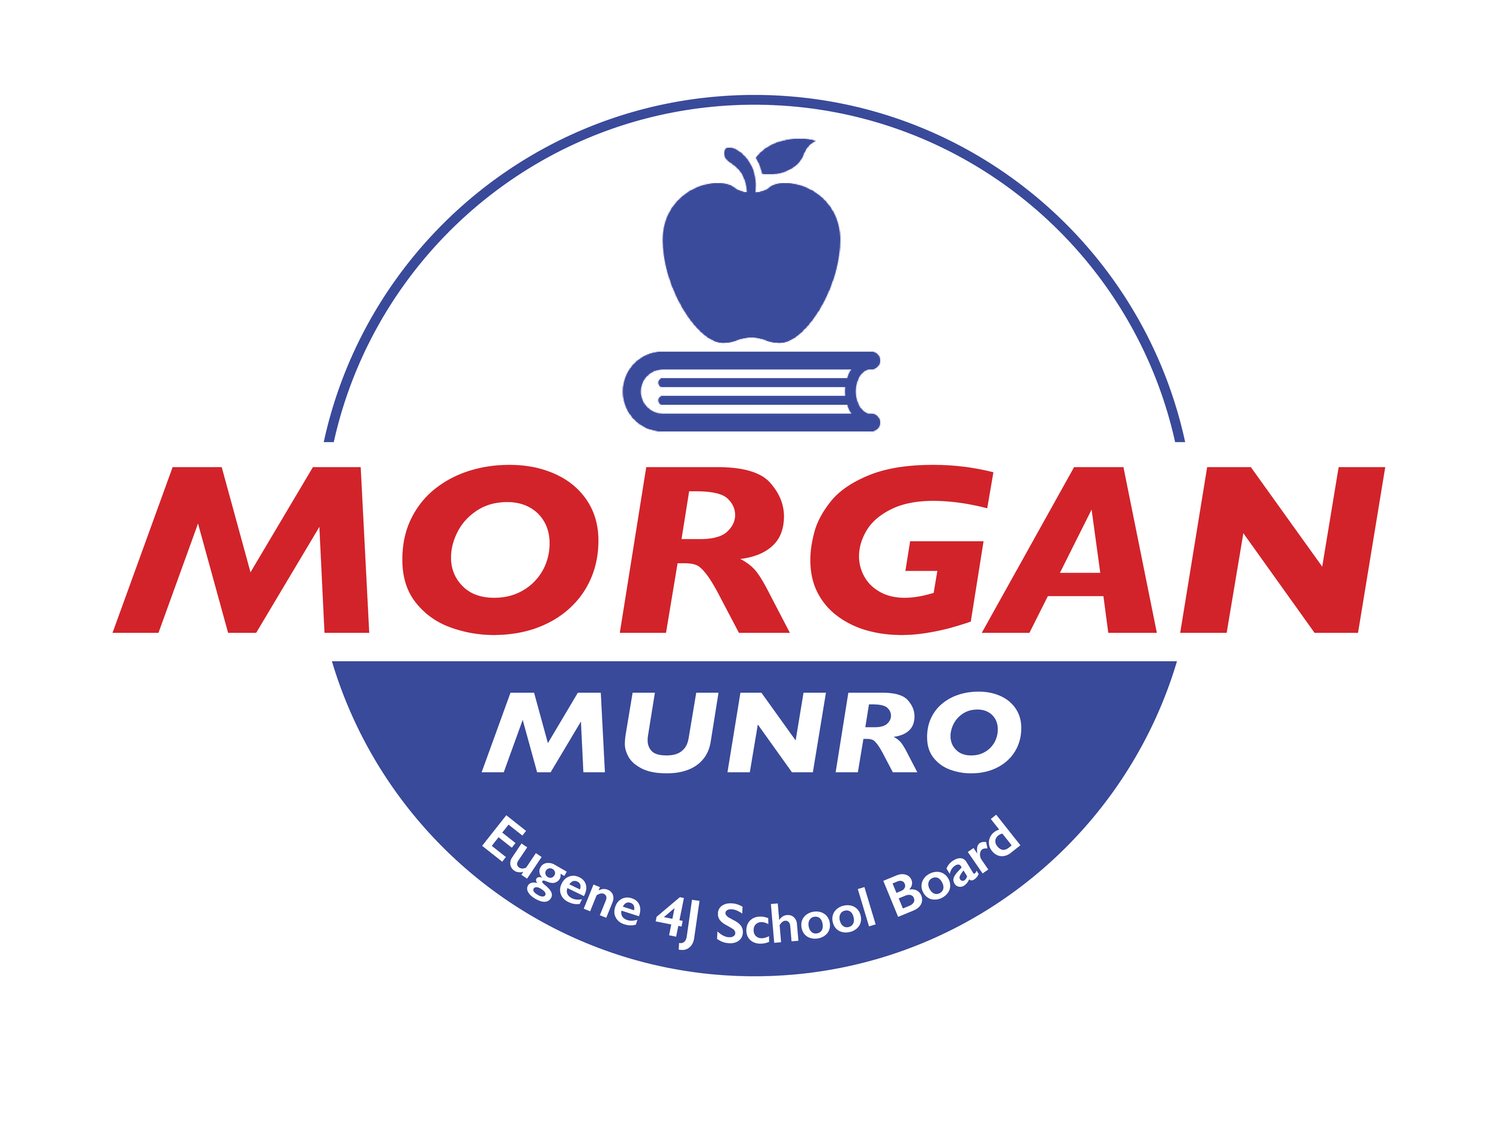 Morgan Munro for Eugene 4J